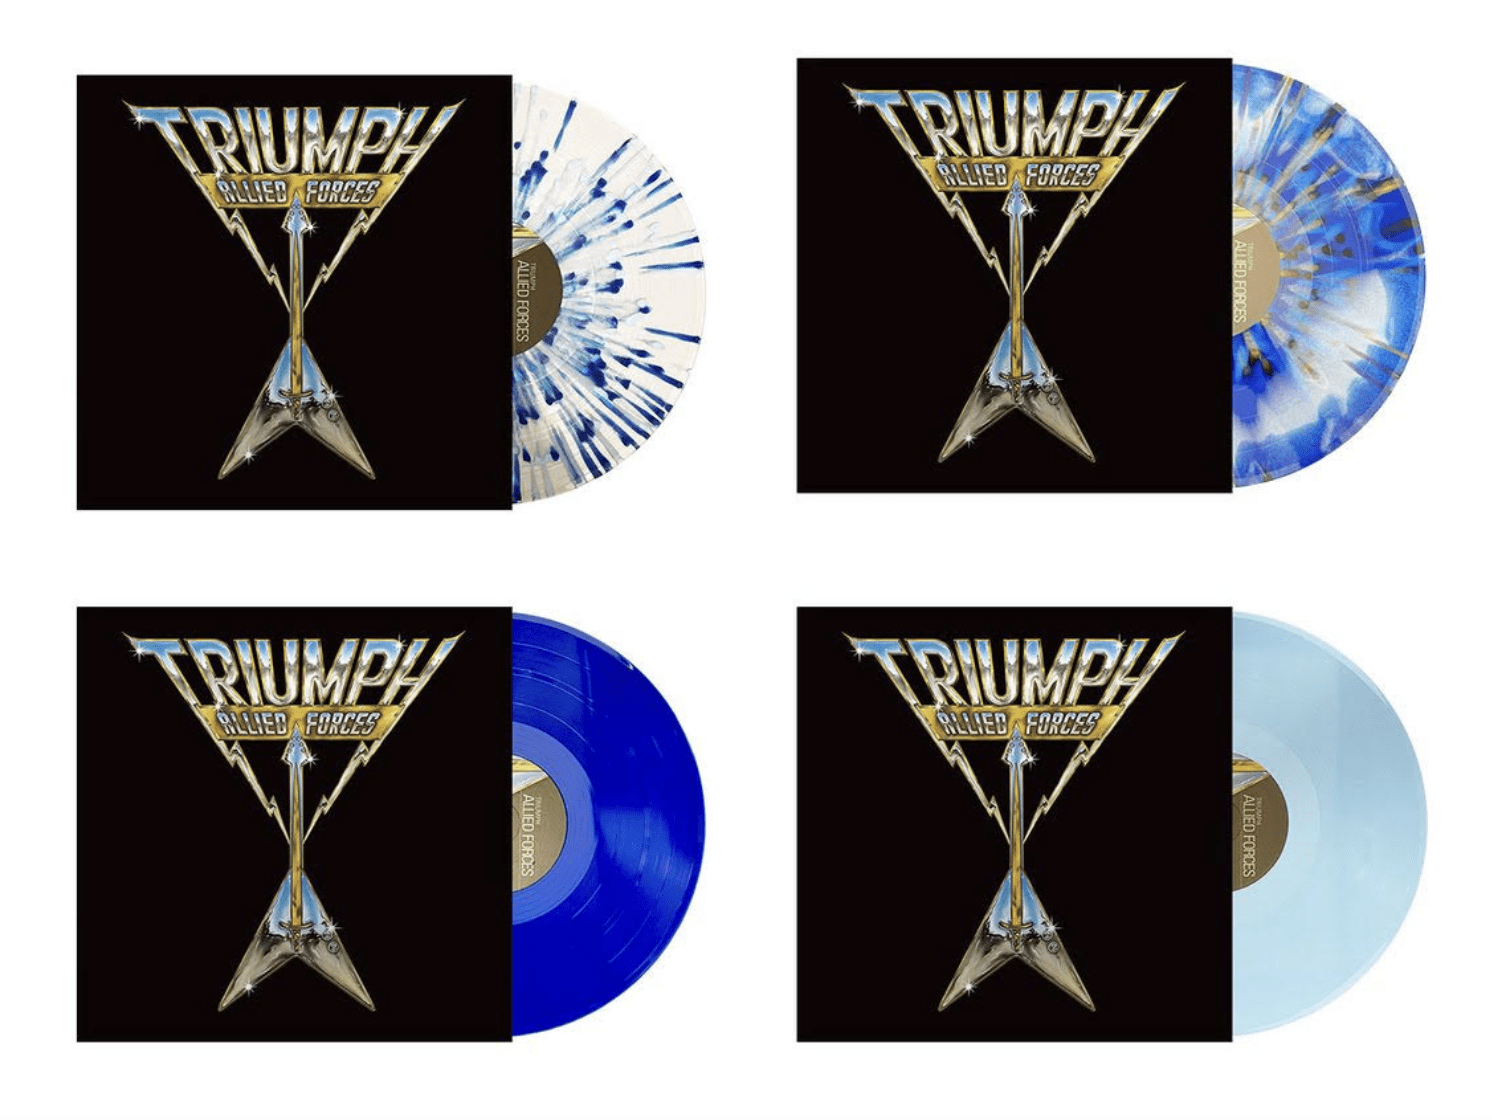 80s Rock Legends Triumph Get Vinyl Re-Issues!